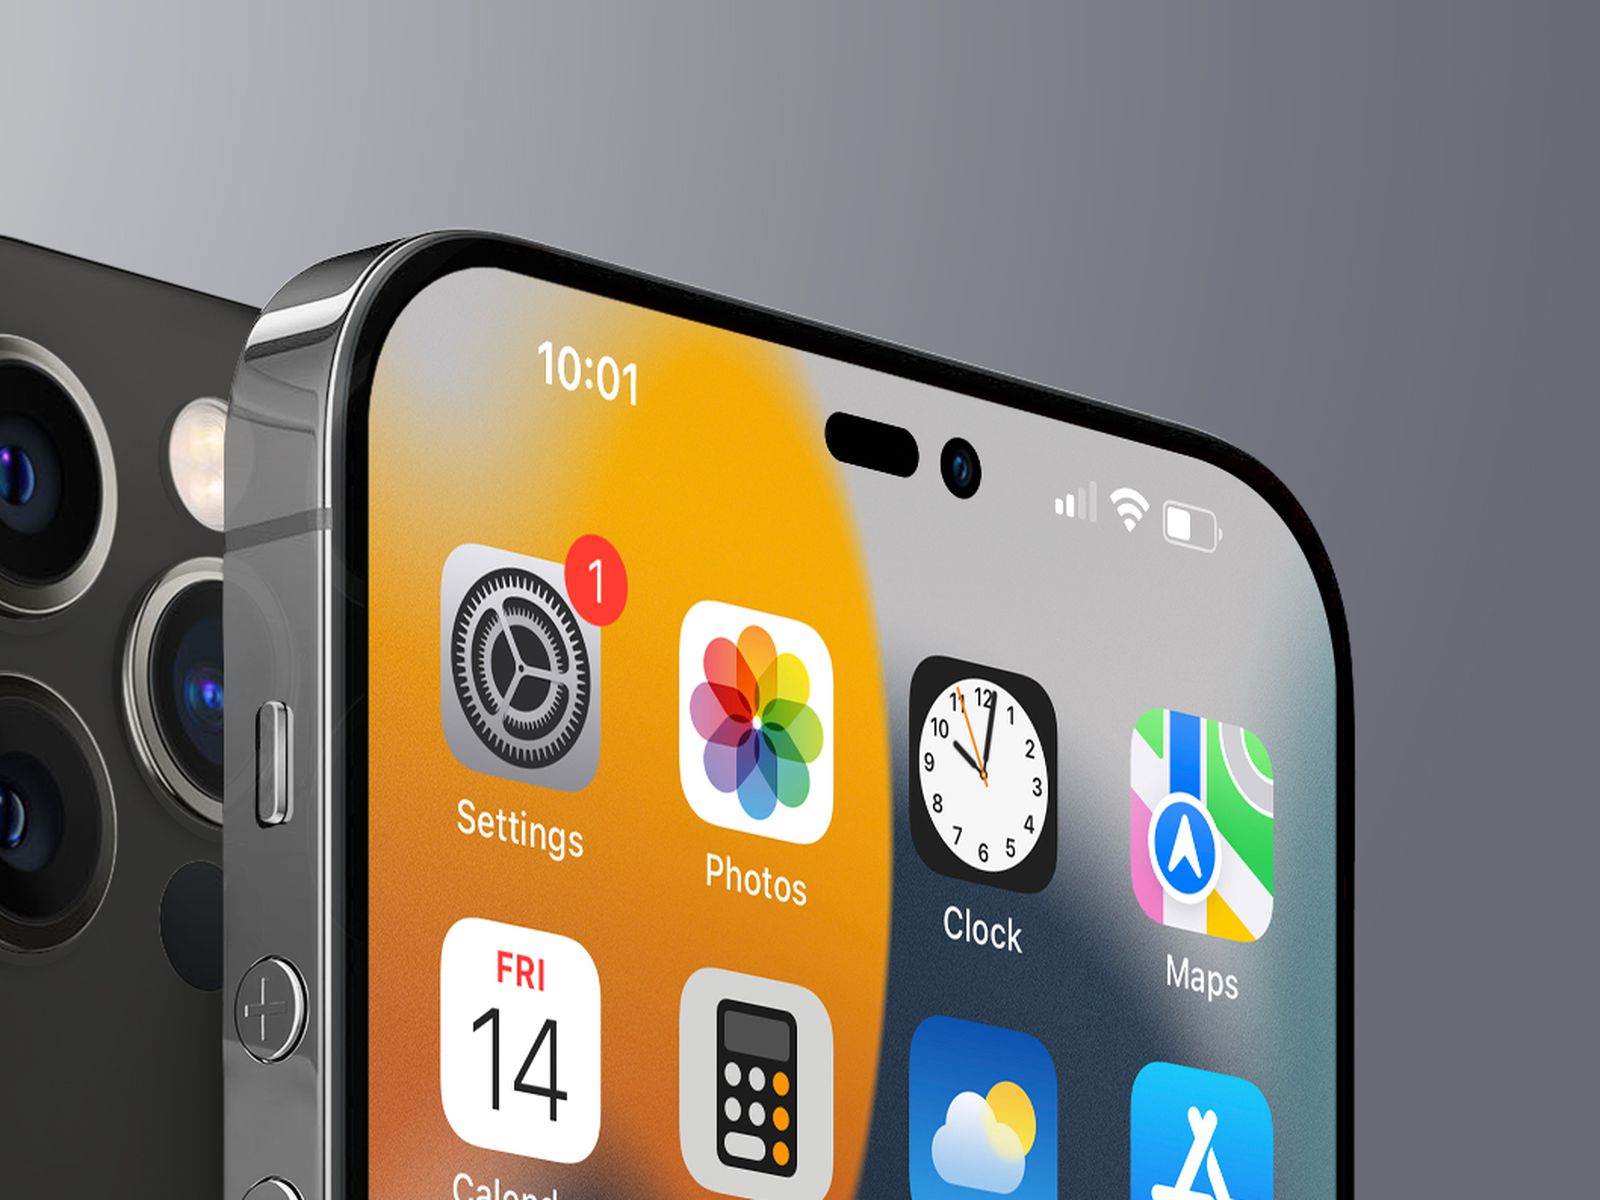 Các mẫu iPhone 14 Pro được cập nhật với những tính năng mới nhất, màn hình rực rỡ và chất lượng hình ảnh tuyệt vời. Khám phá những tính năng nổi bật của điện thoại với hình ảnh chi tiết và chân thực.